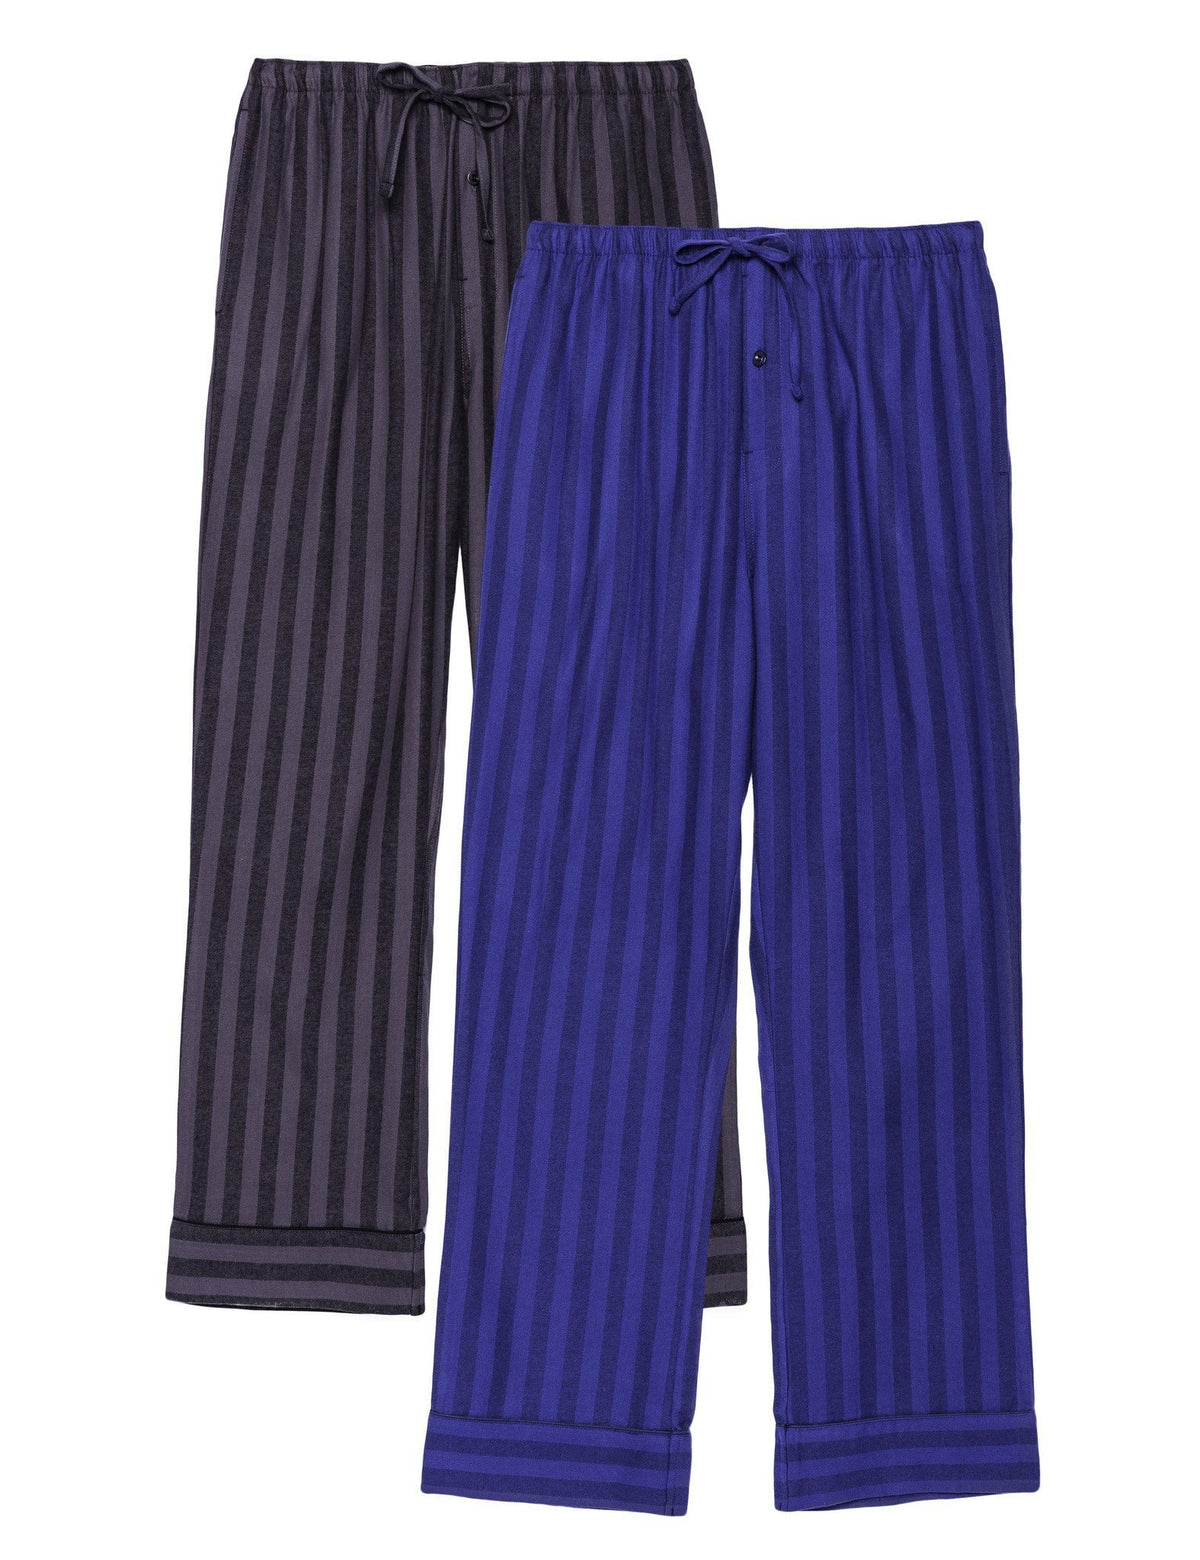 2-Pack Men's 100% Cotton Flannel Lounge Pants (Stripes Tonal Blue/Black-Grey)